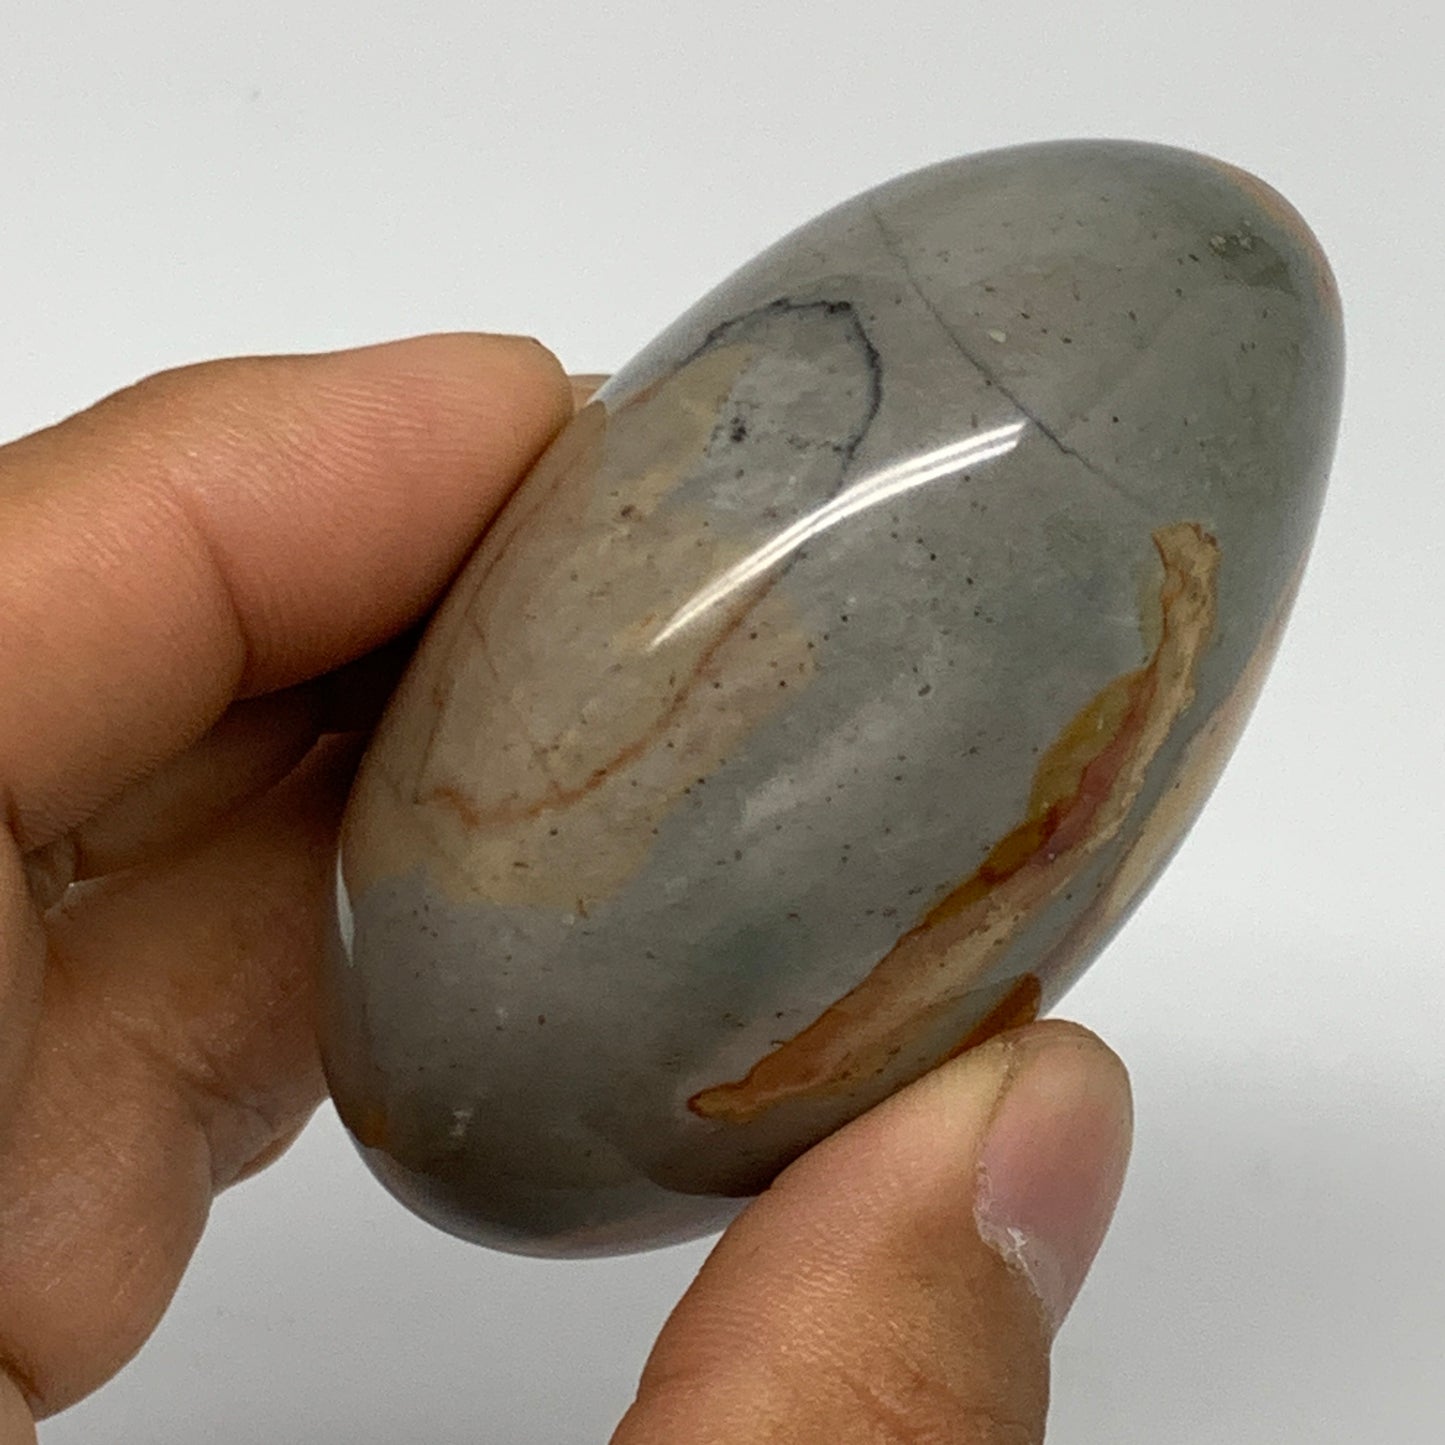 156.1g, 2.6"x2"x1.4" Polychrome Jasper Palm-Stone Reiki @Madagascar, B24550